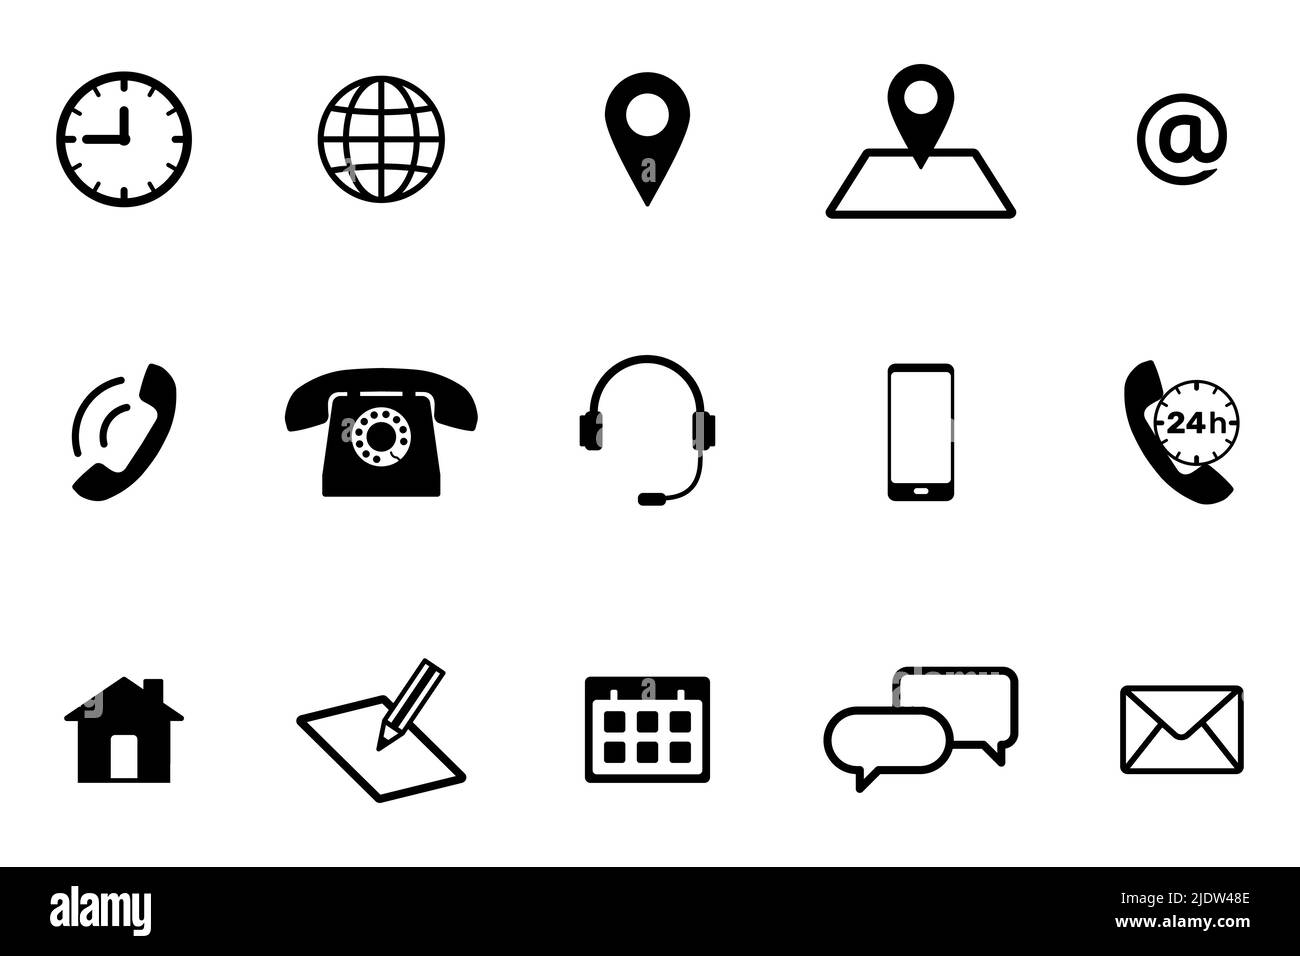 Kontaktsymbol für Internet und Mobiltelefon eingestellt. Sammlung von Kommunikationssymbolen. Flache Vektorgrafik Stock Vektor